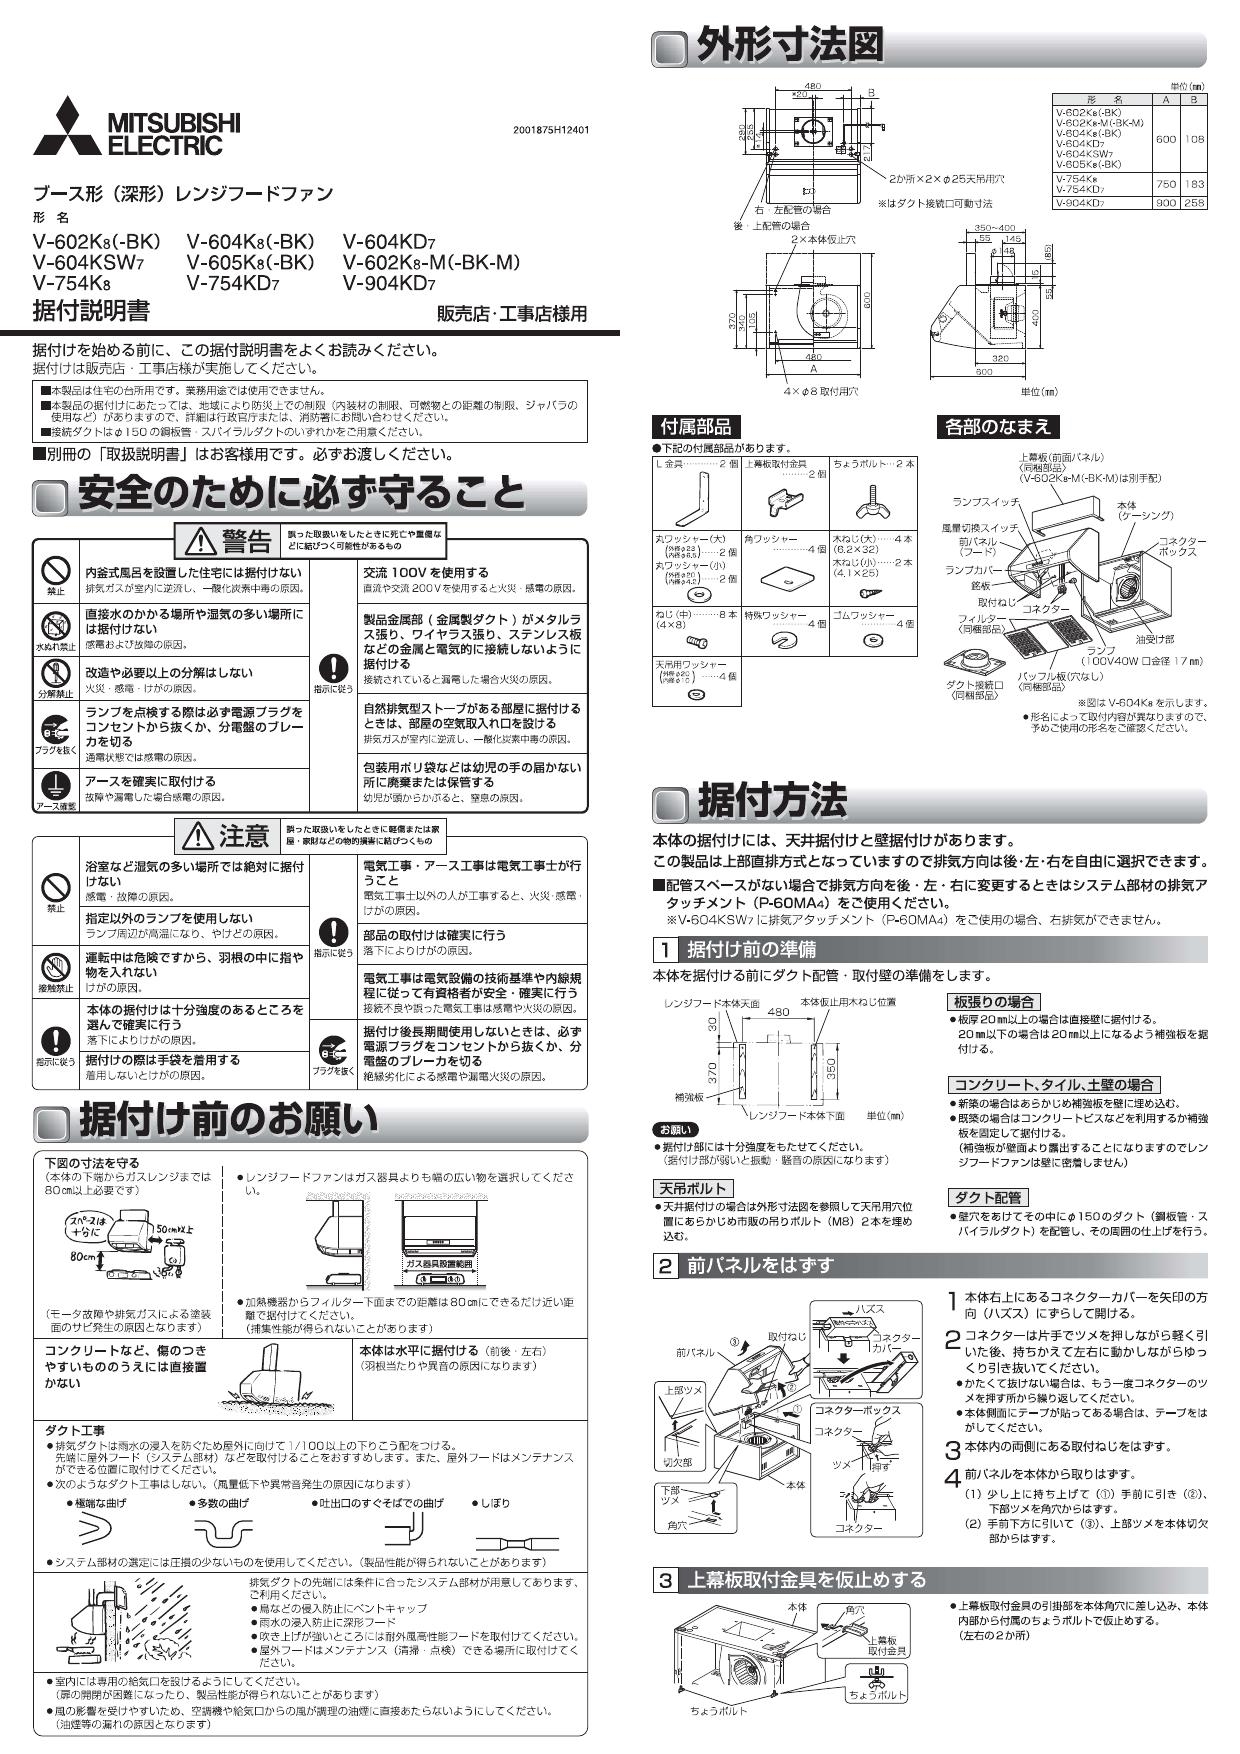 三菱電機 (MITSUBISHI) レンジフードファン ブース形 (深形)・BL認定品 V-6047KL7-BL - 3